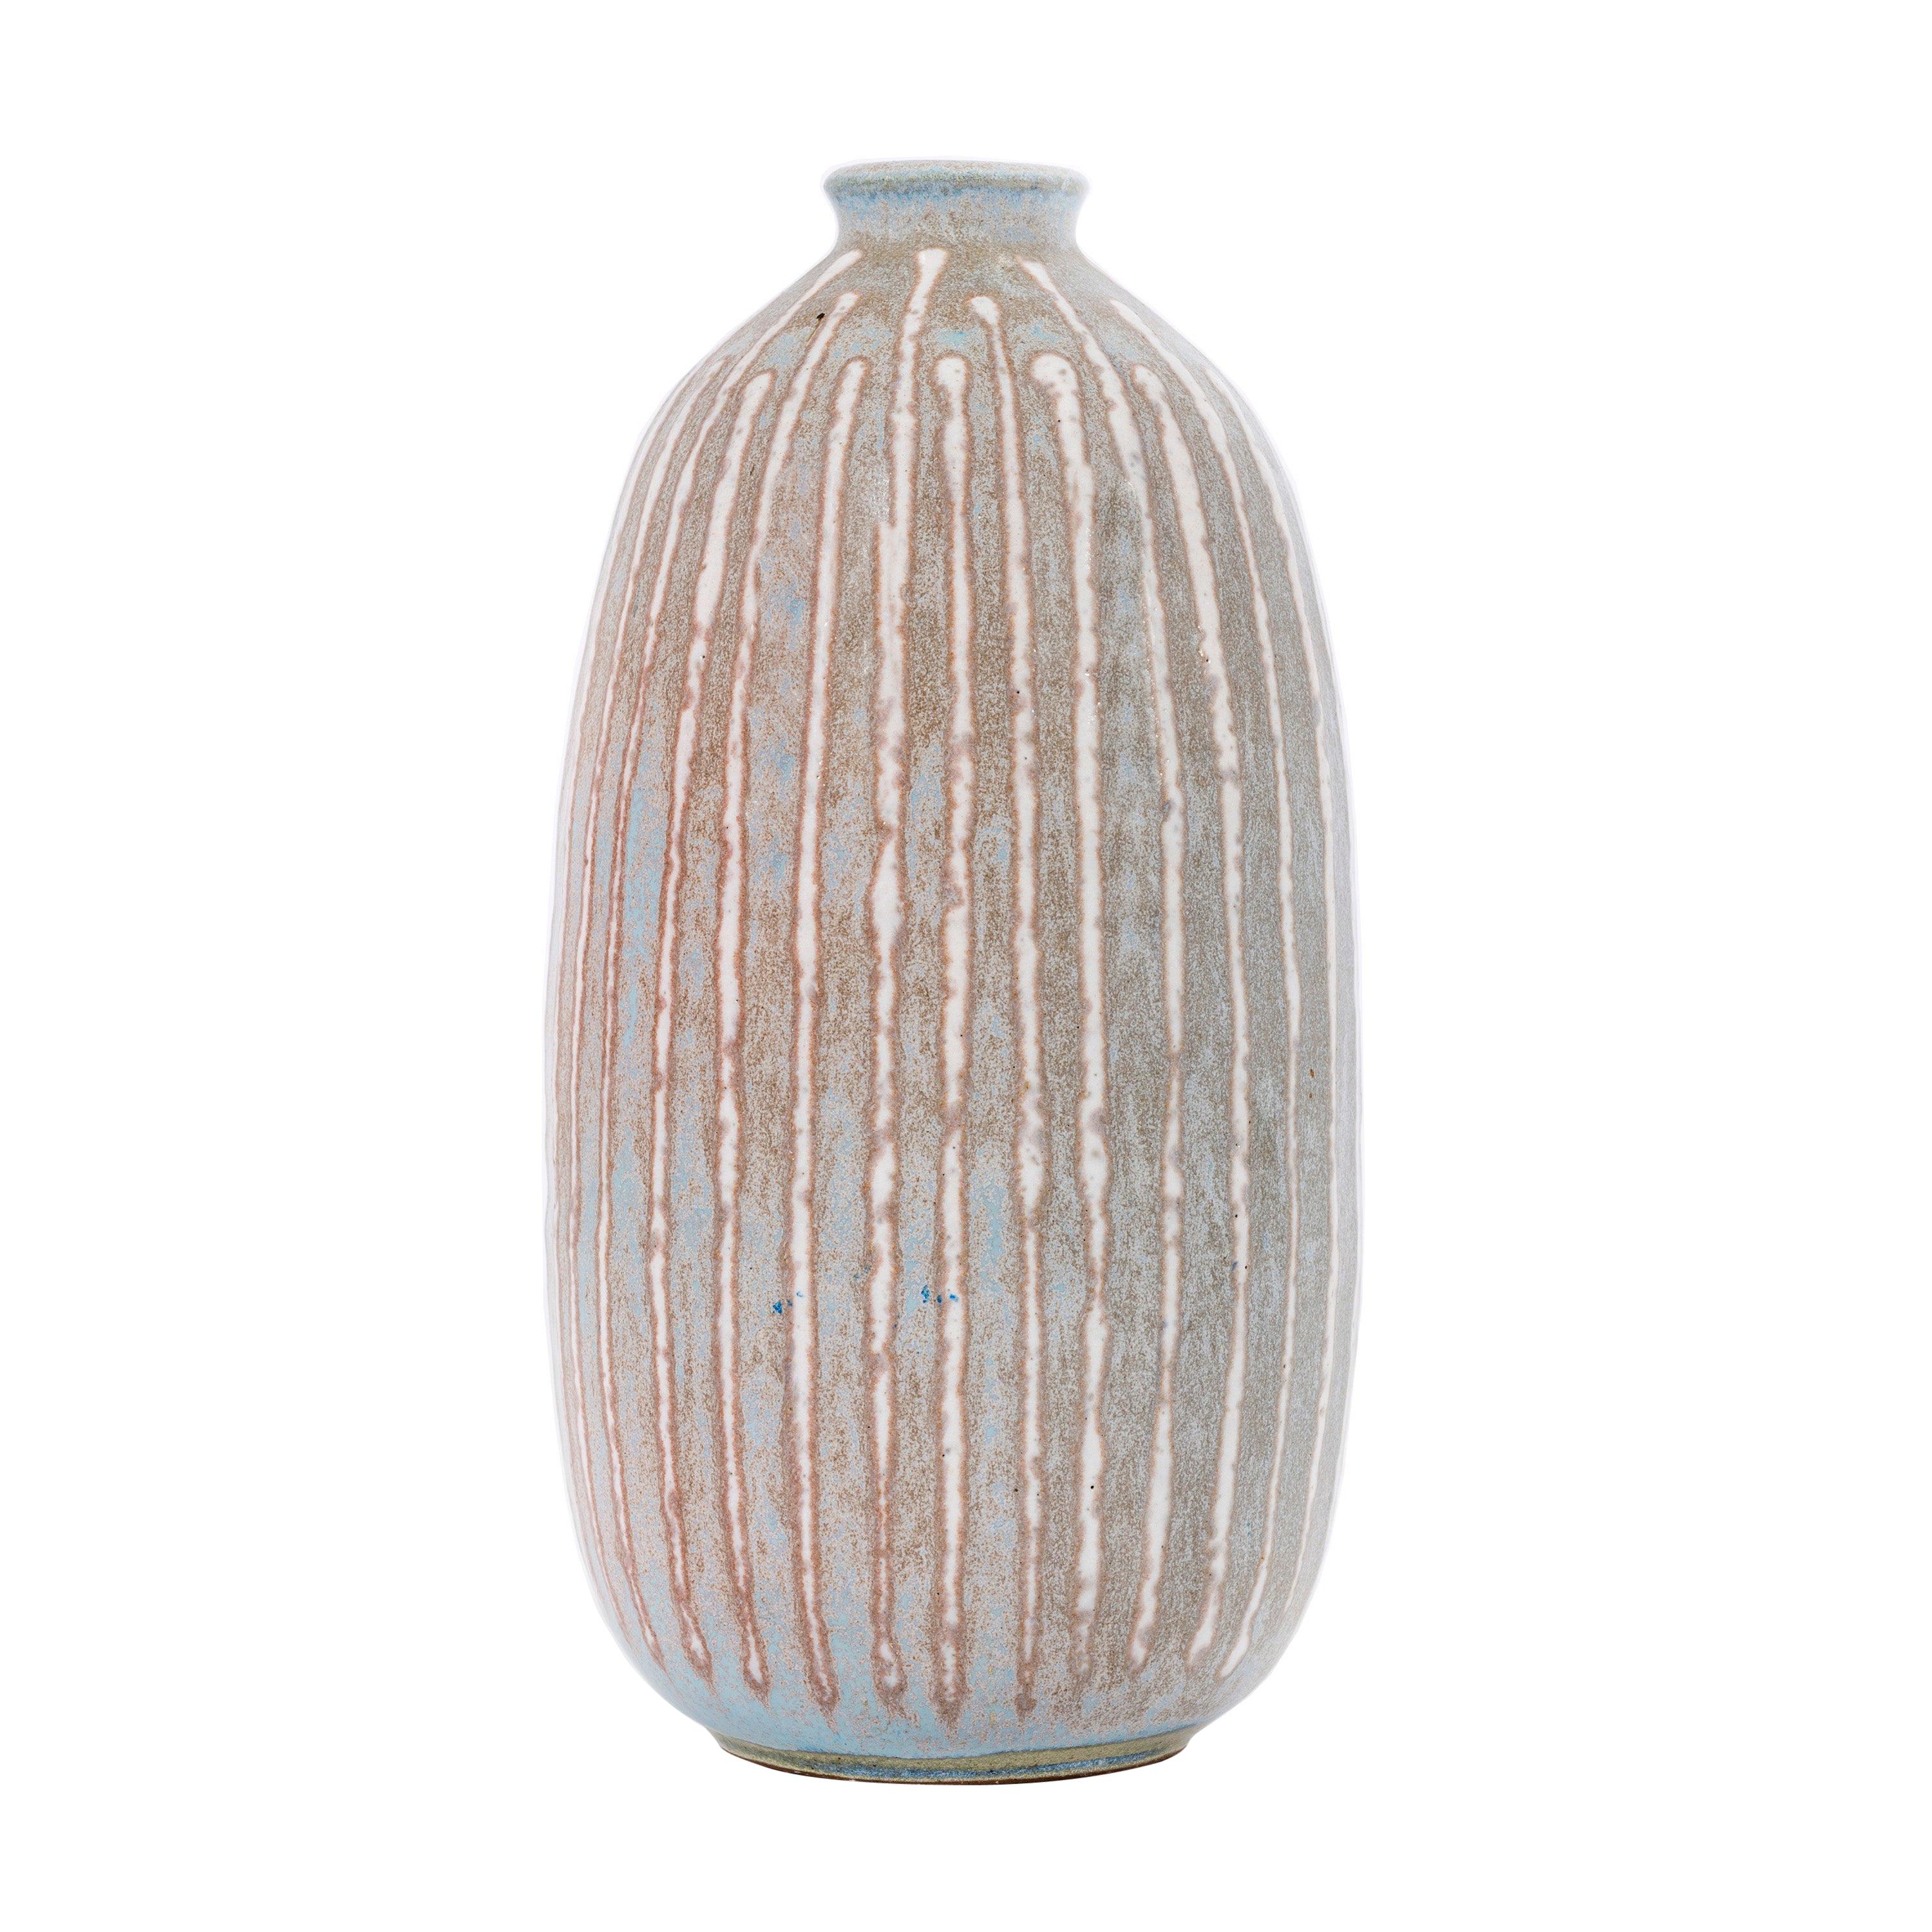 Clyde Burt Keramik-Vase